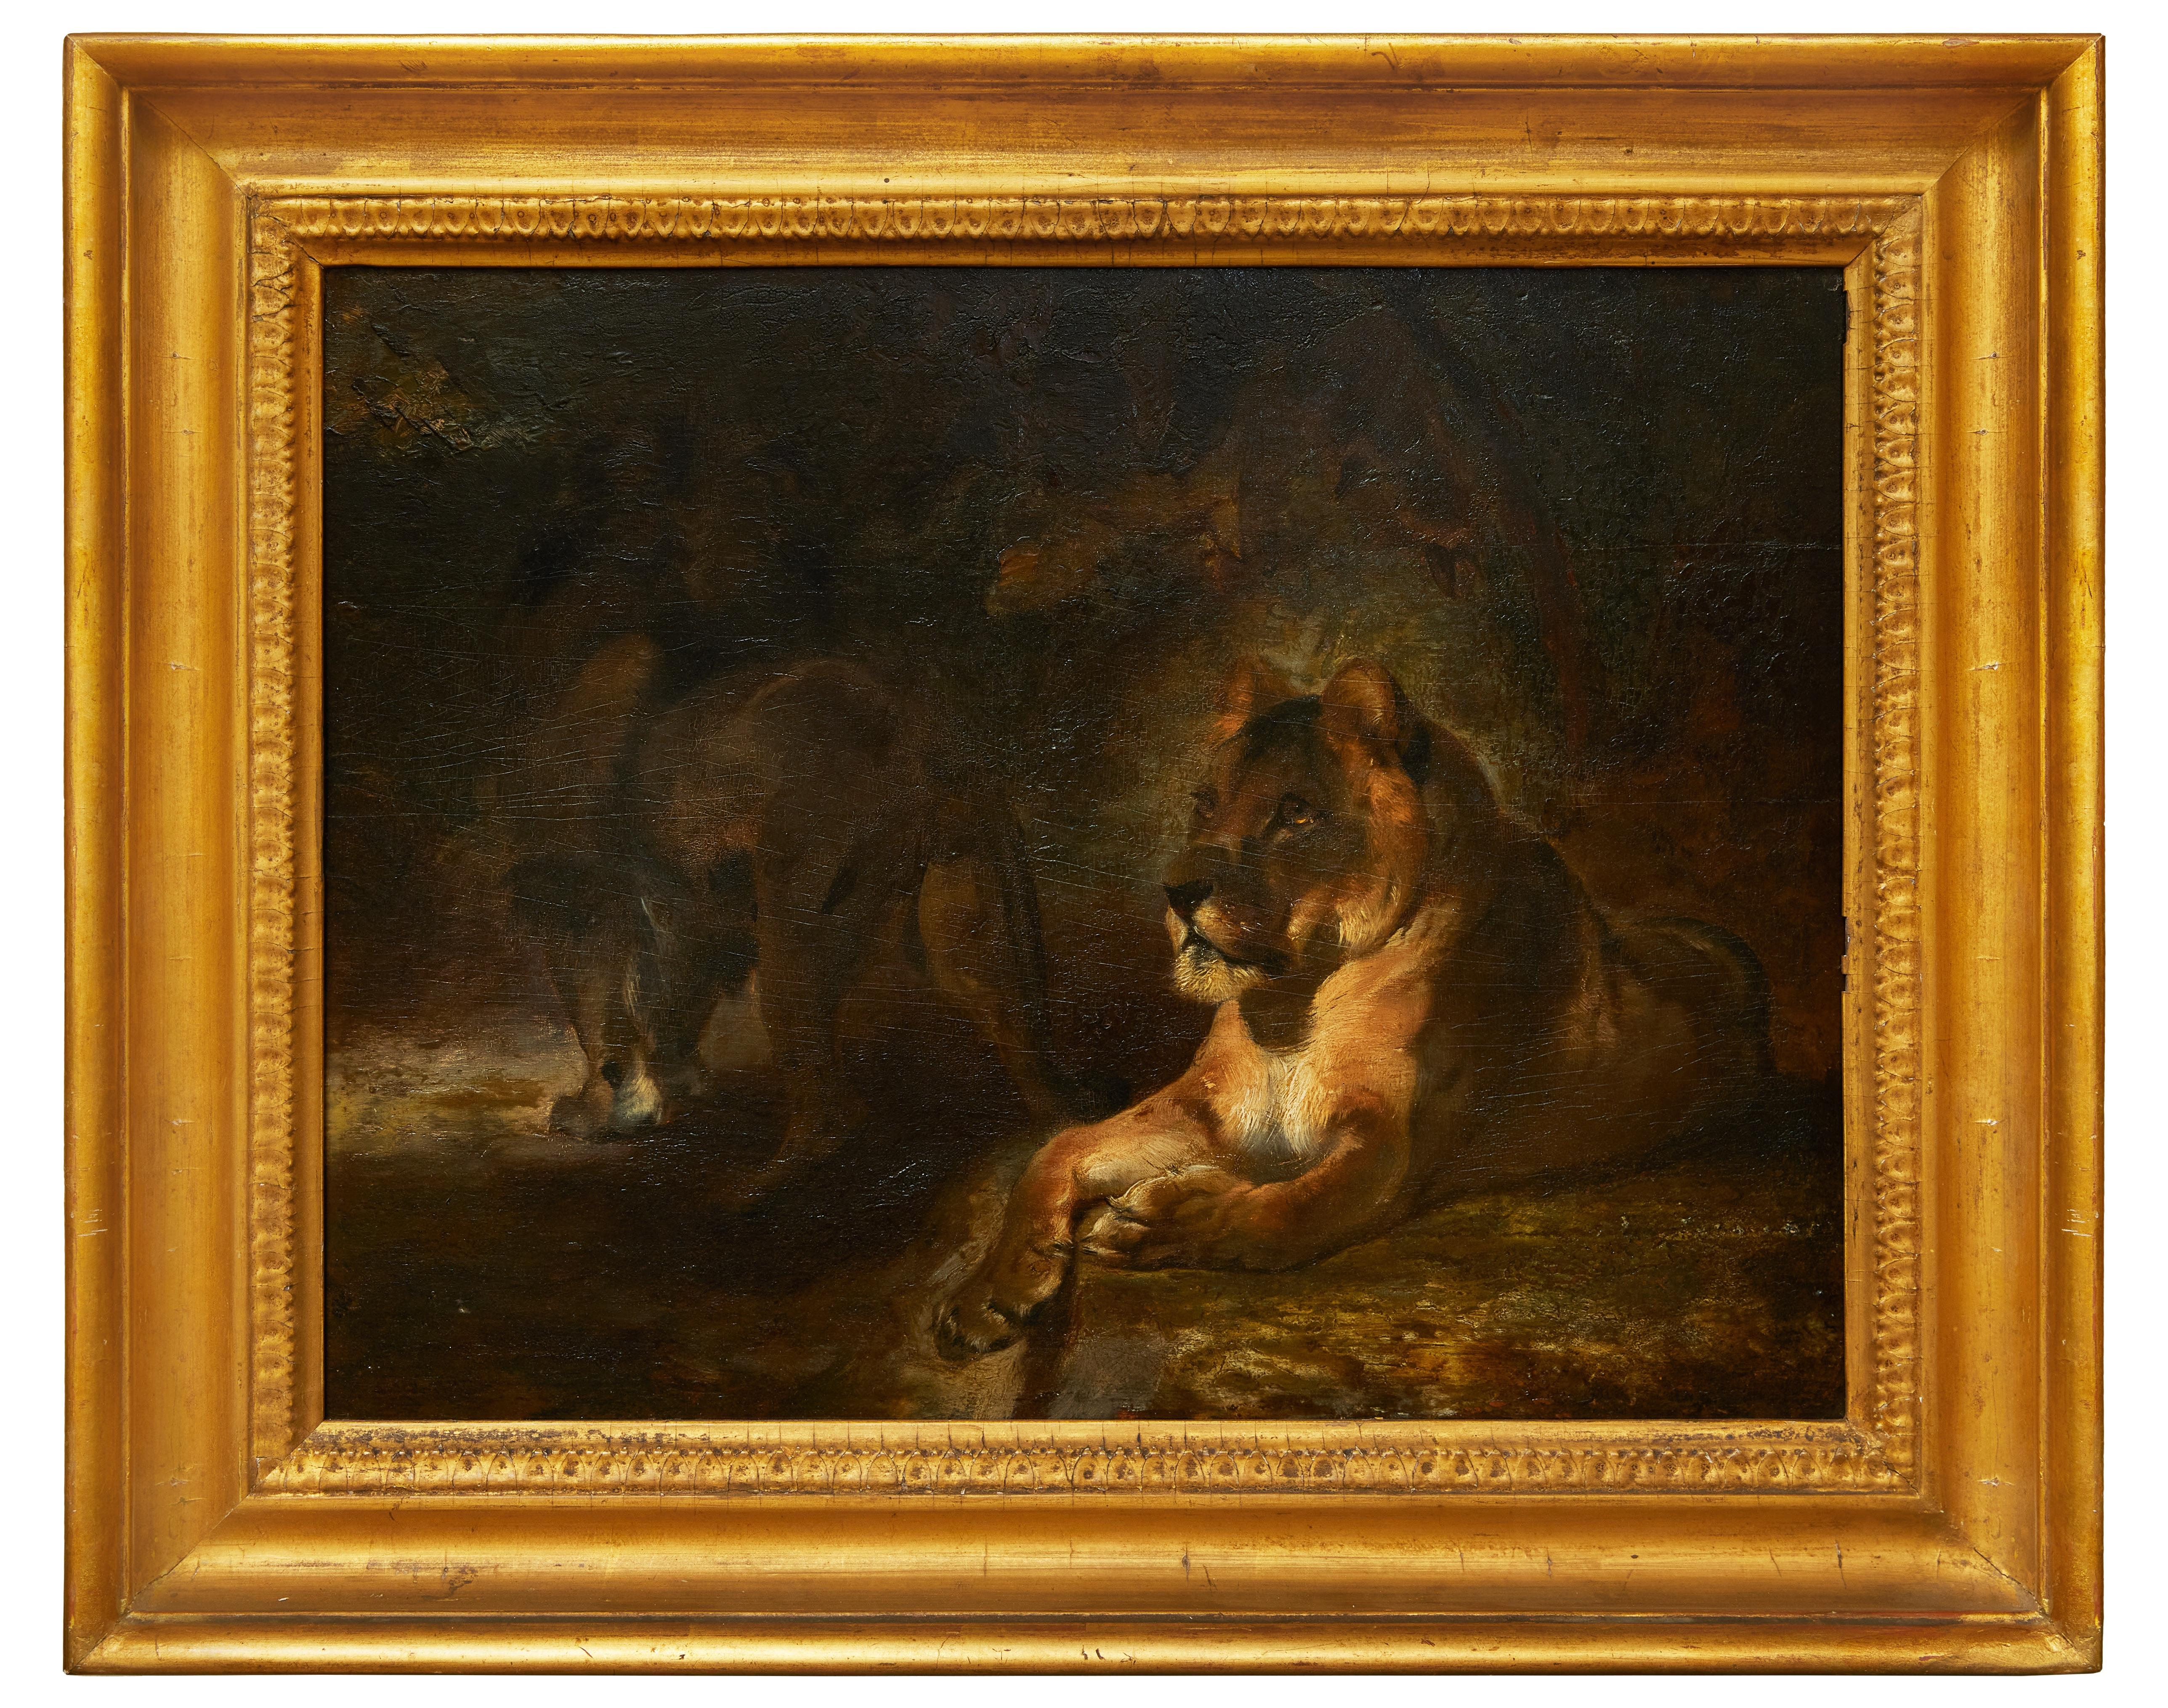 Animal Painting William Huggins - Un lion et une lionne dans un paysage